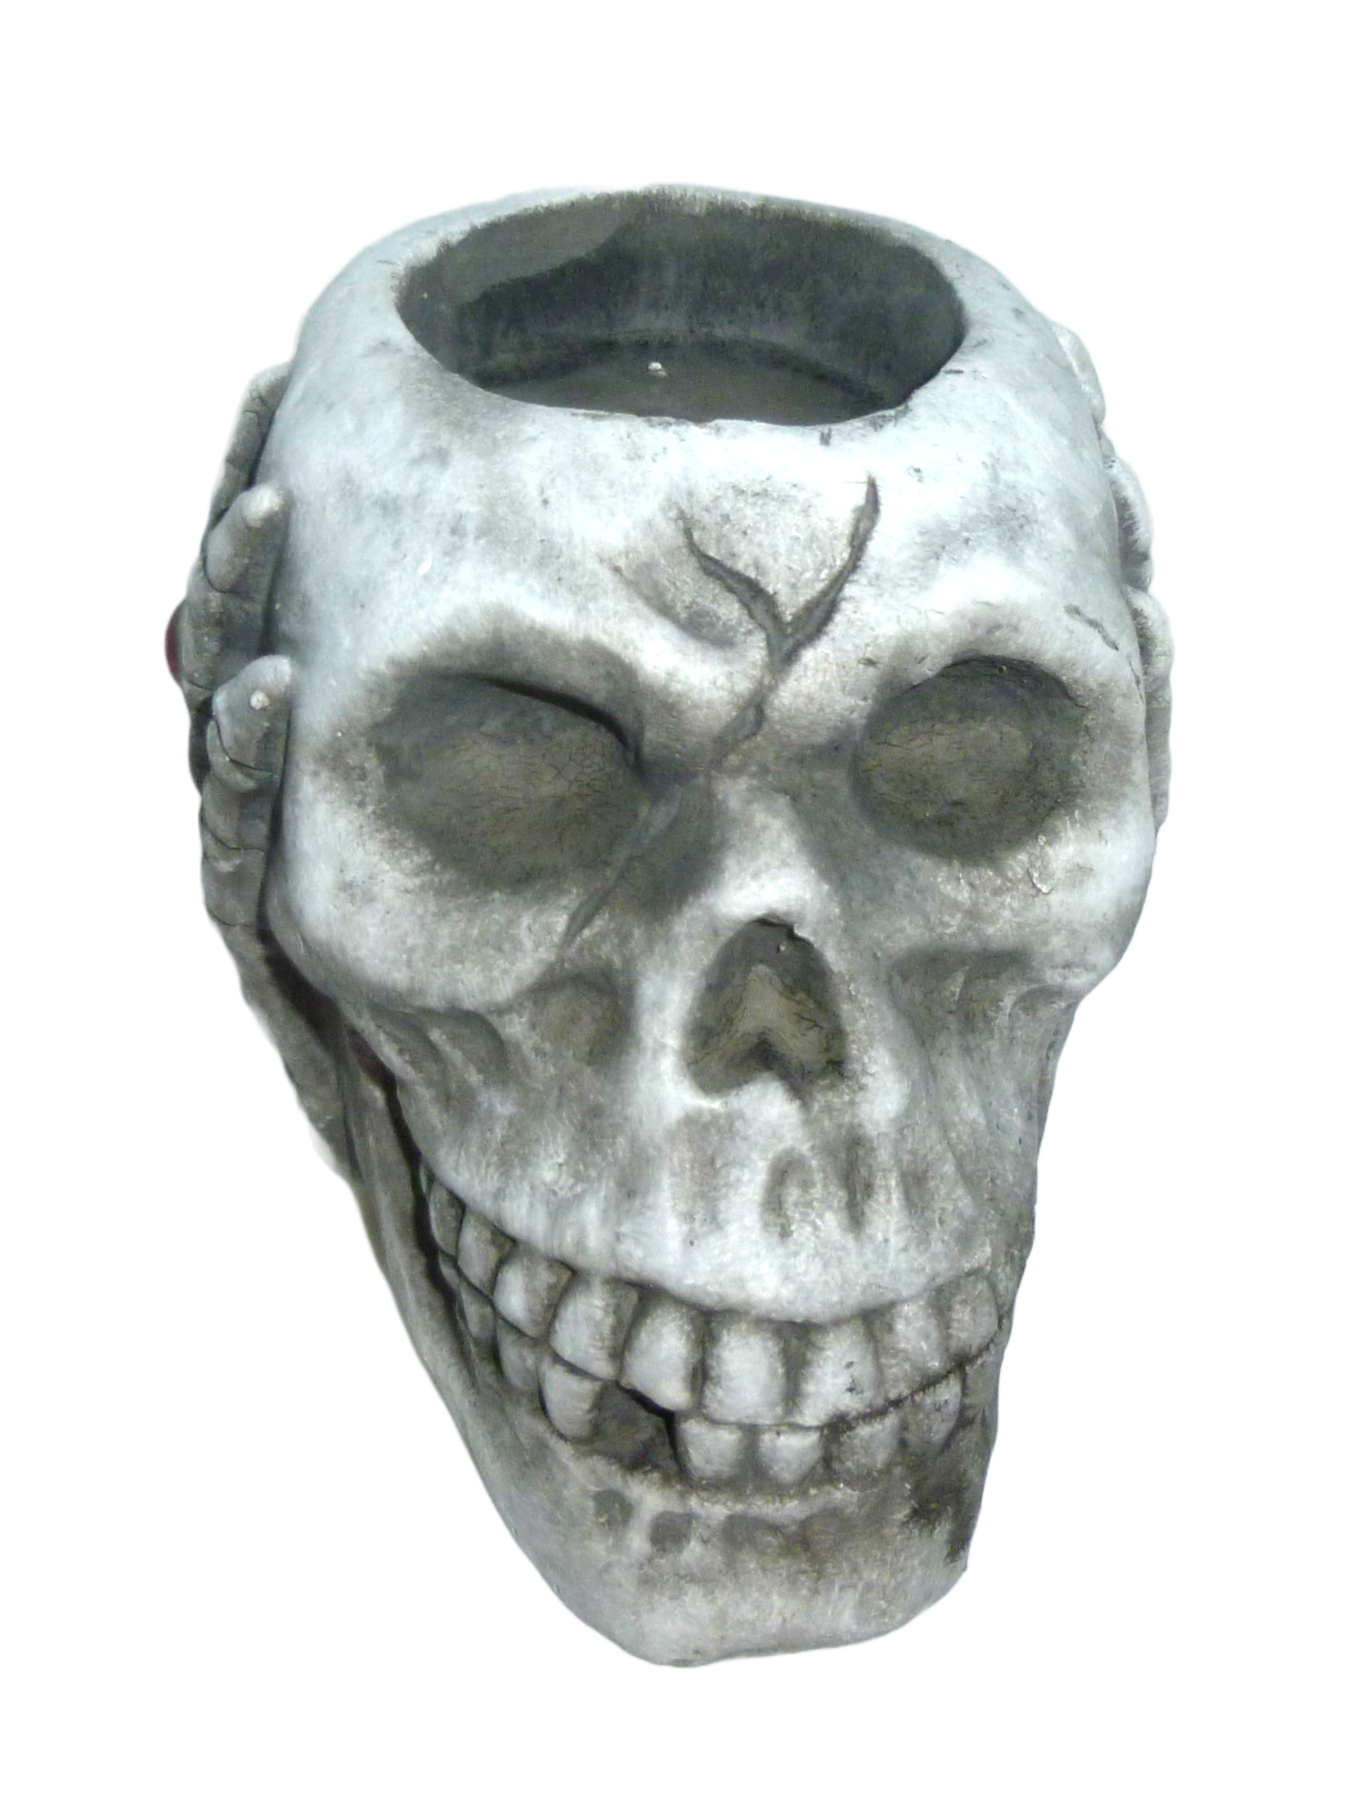 Skull and Crossbones - Tealight Holder - Halloween Deko, dark fantasy 2